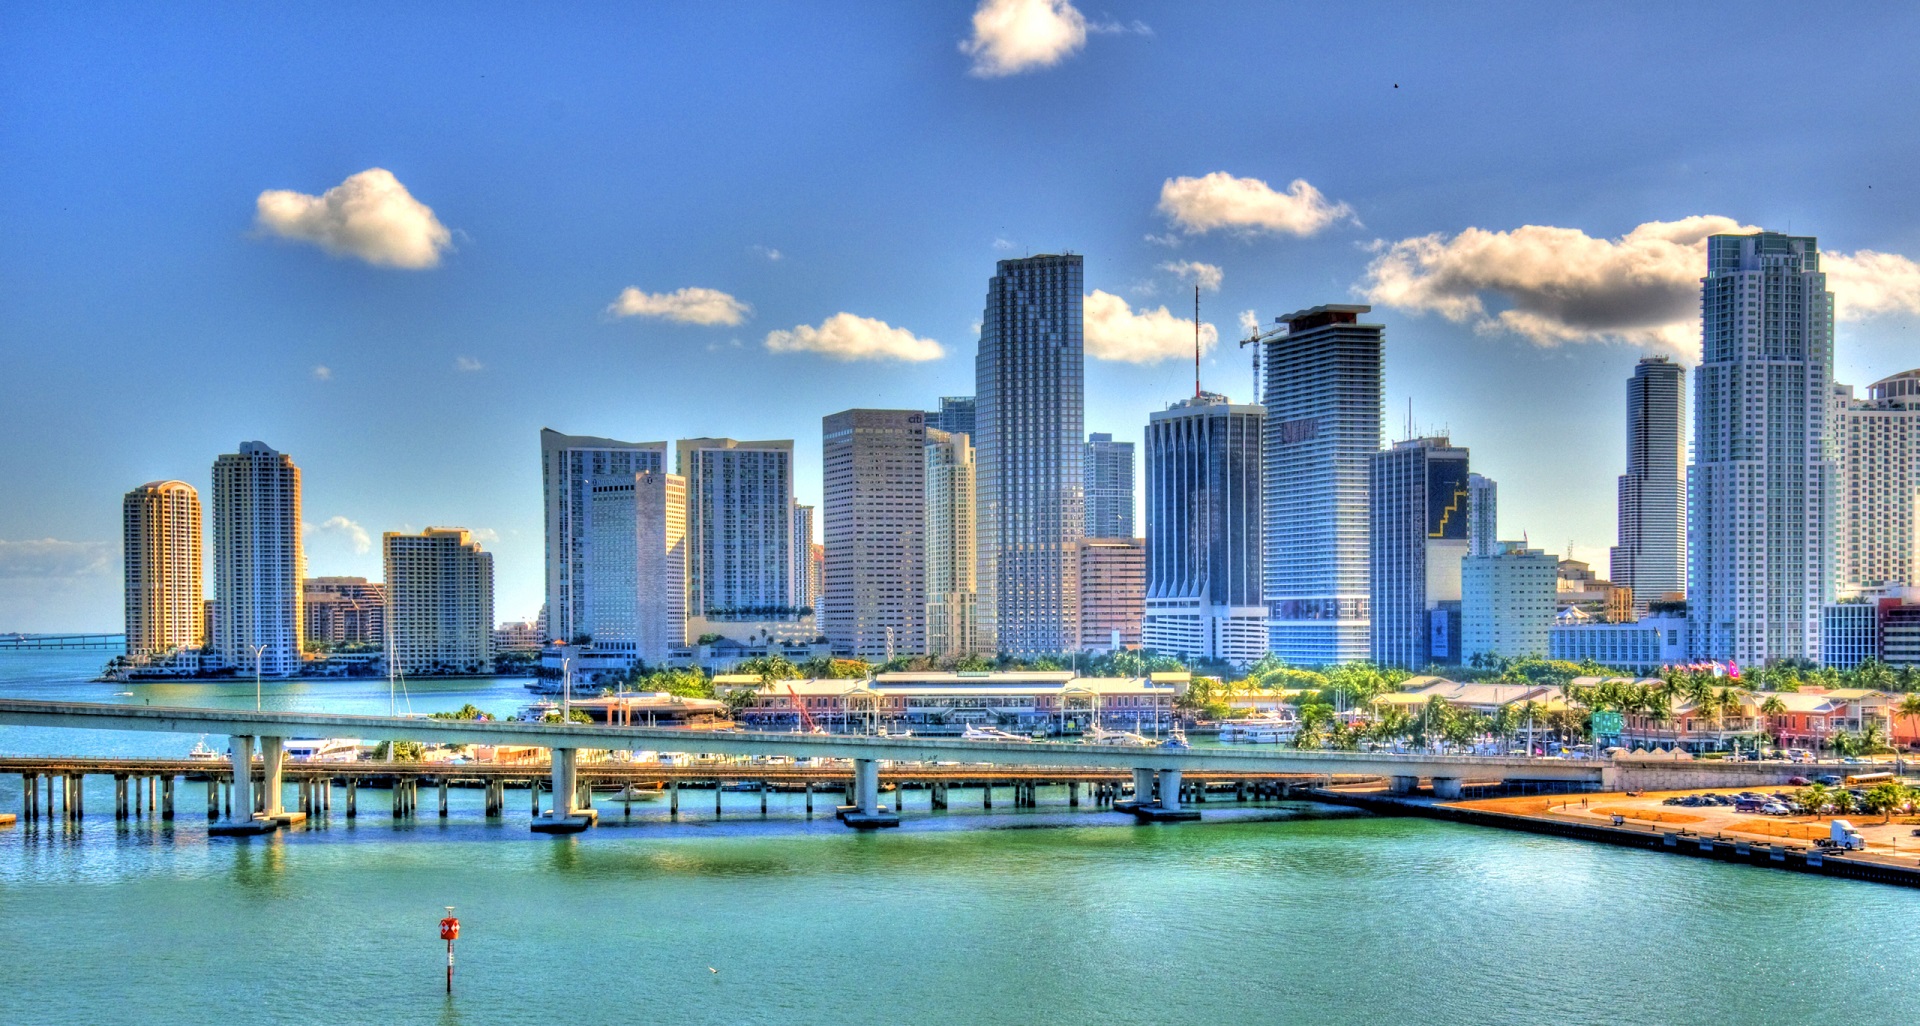 Mudarse a Miami, información útil y consejos para trasladarse a Miami